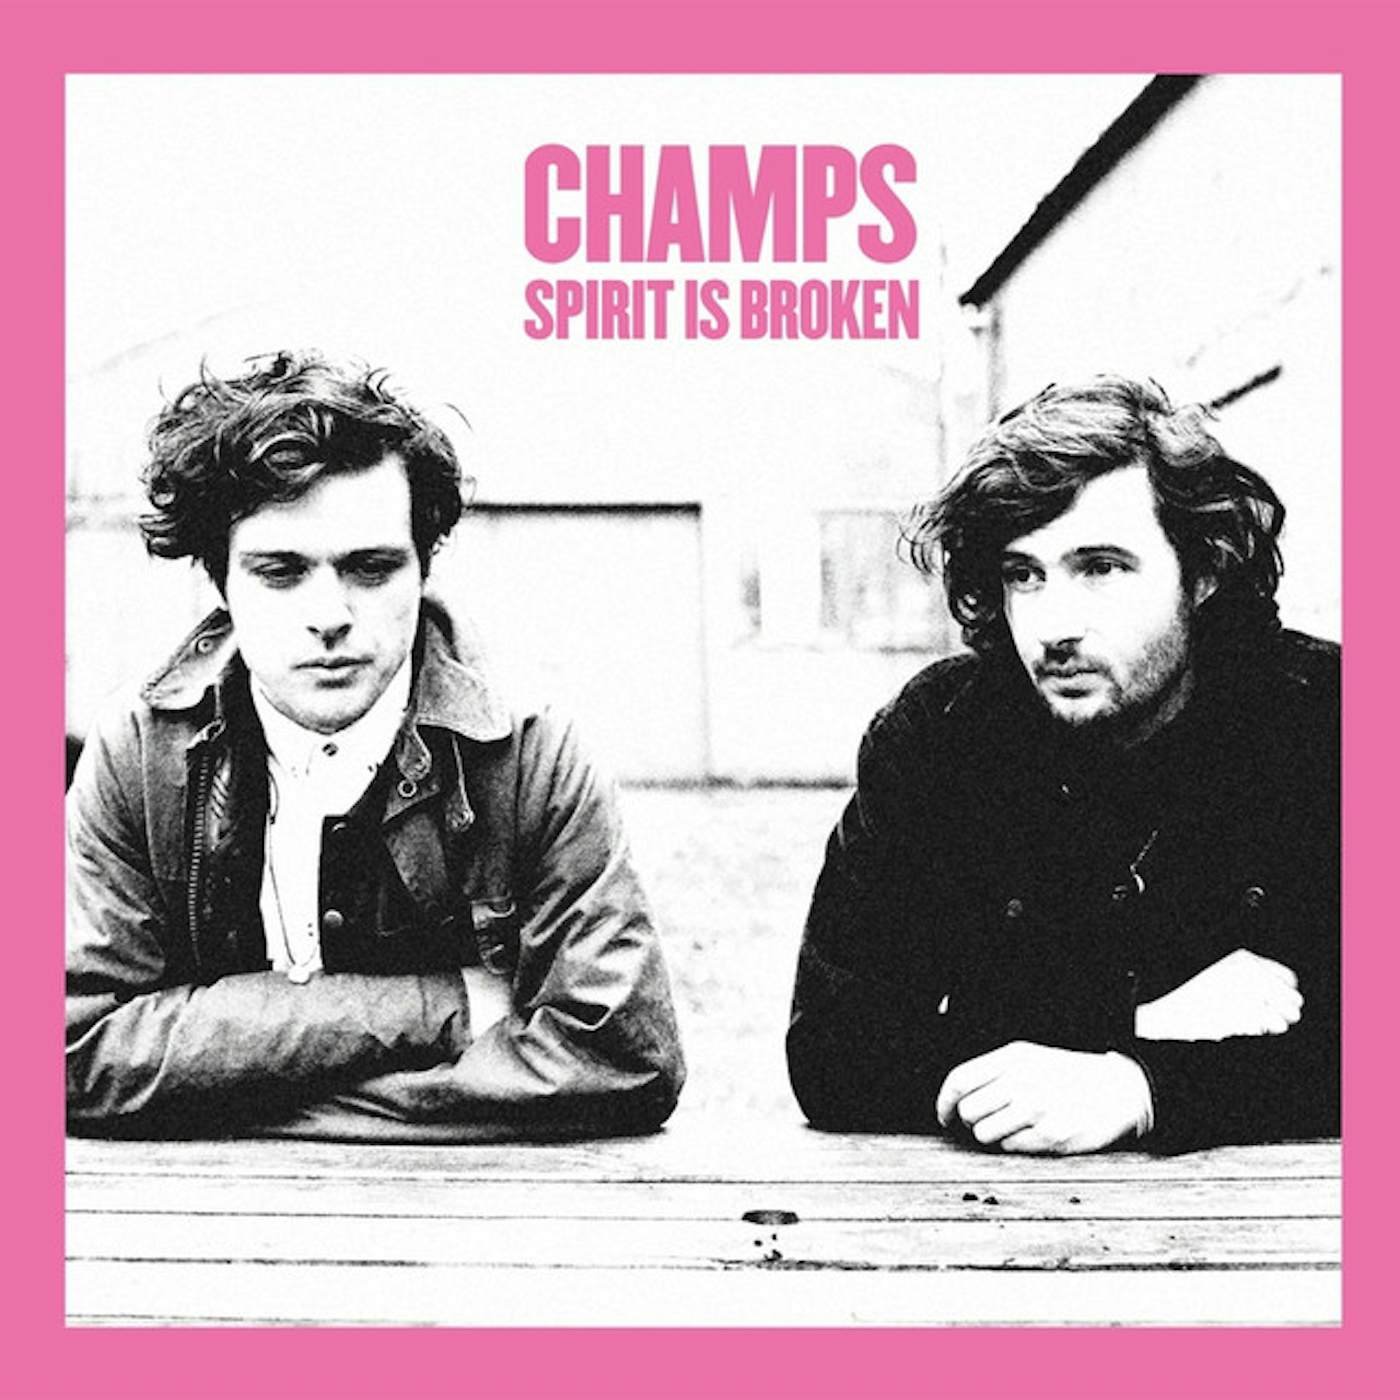 CHAMPS Spirit Is Broken Vinyl Record